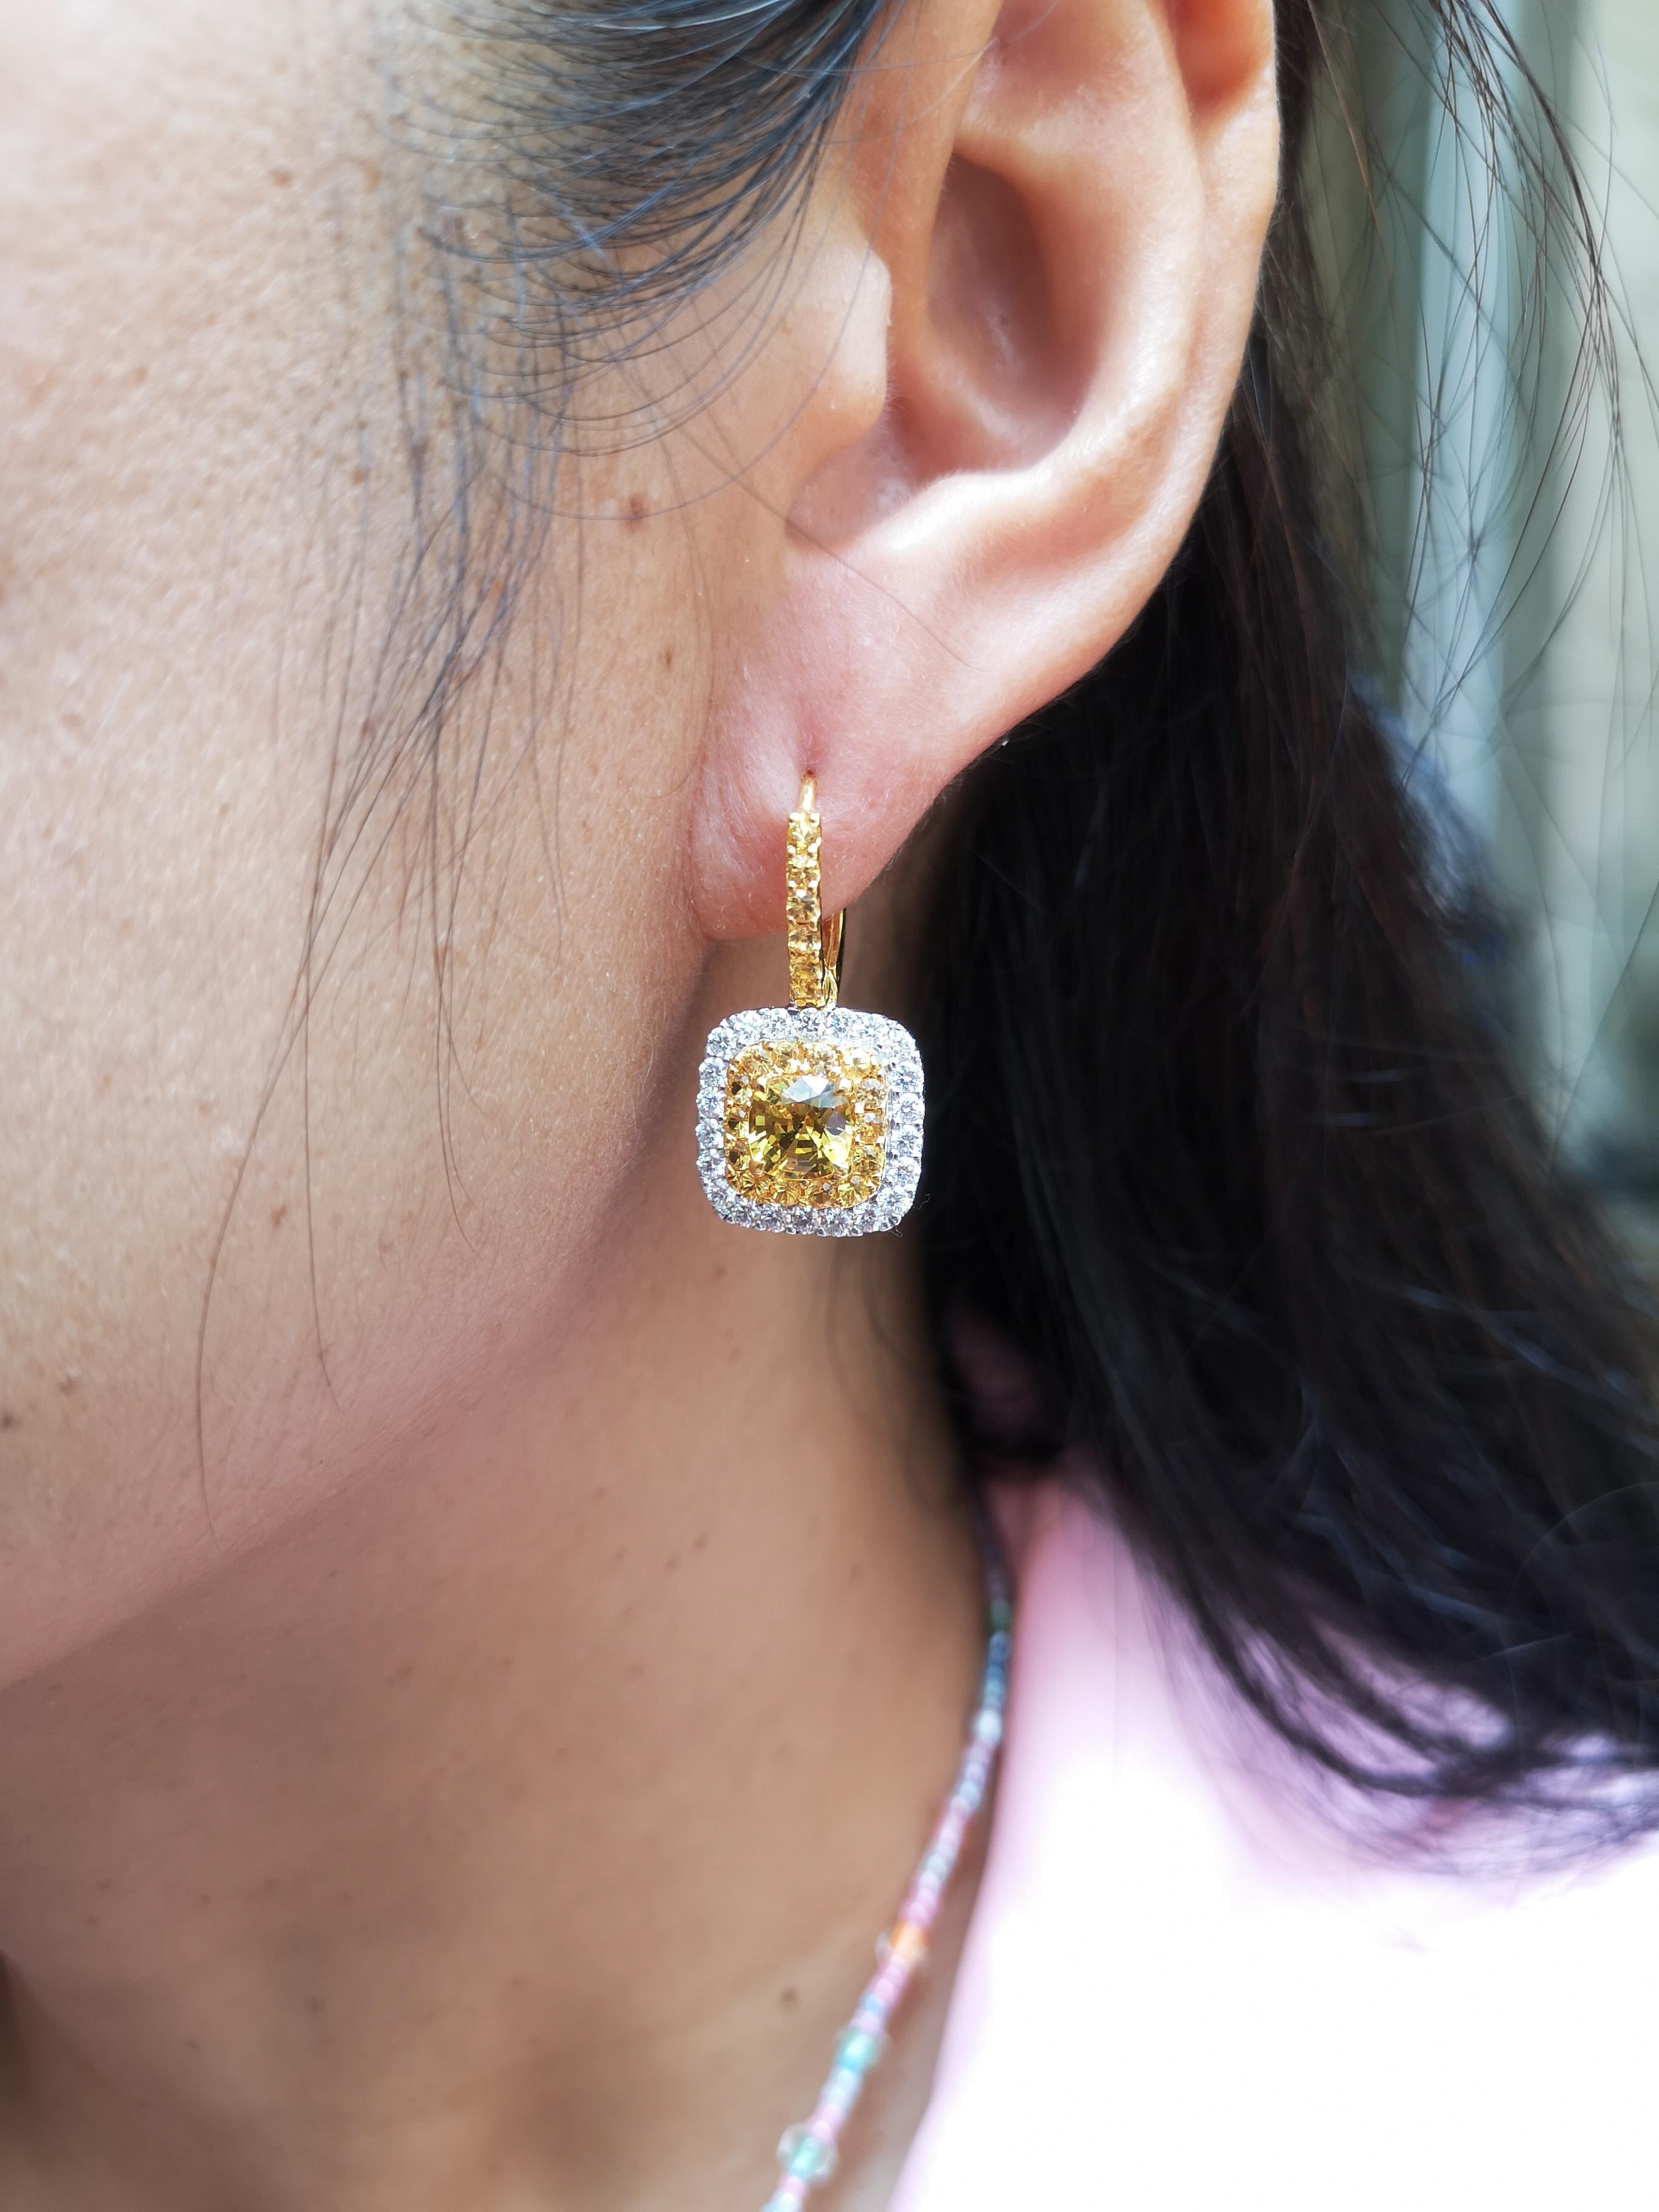 Boucles d'oreilles composées d'un saphir jaune de 2,31 carats, d'un saphir jaune de 1,14 carat et d'un diamant de 1,04 carat, le tout dans une monture en or blanc 18 carats

Largeur : 1,5 cm
Longueur : 2,5 cm 

